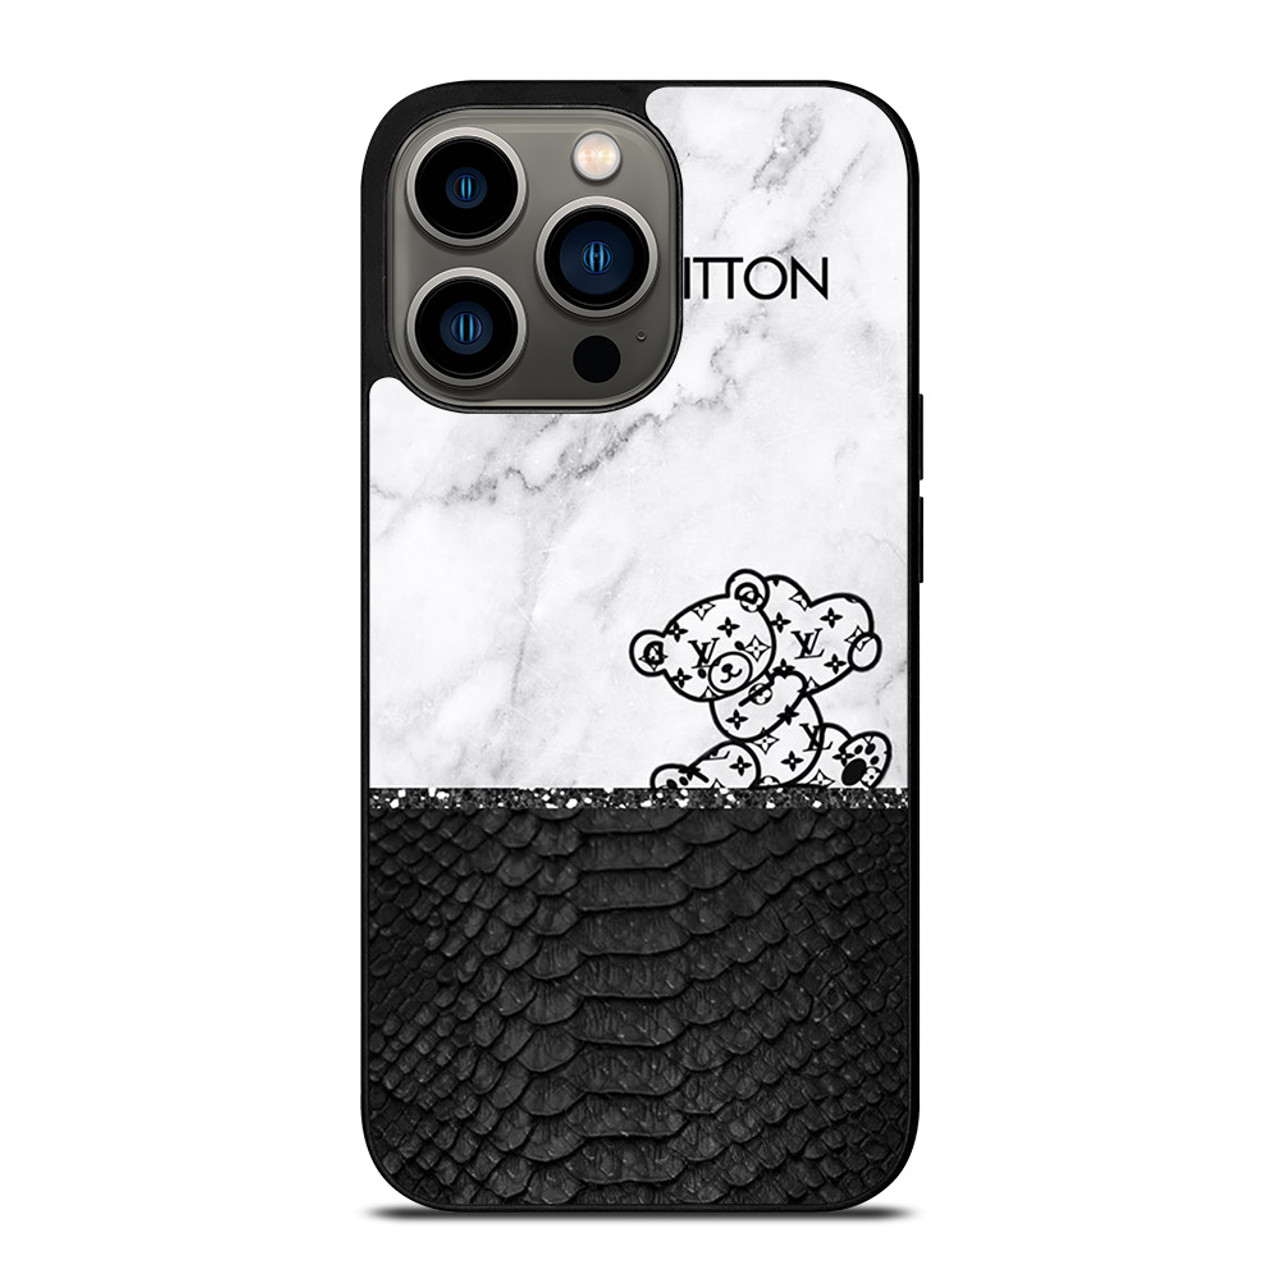 Louis Vuitton iPhone Case - Black Phone Cases, Technology